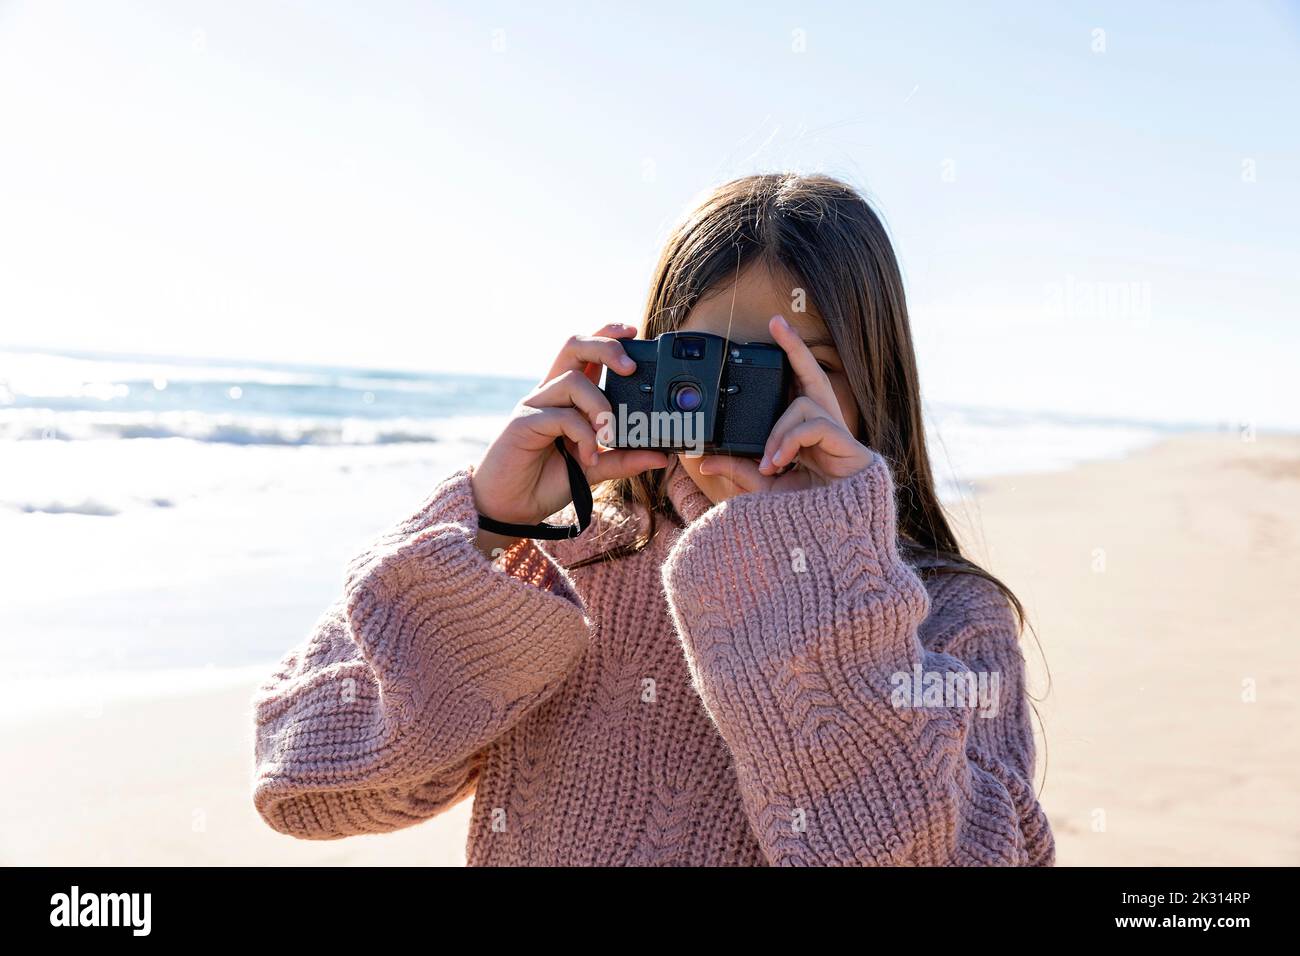 Ragazza con fotocamera che scatta foto in spiaggia Foto Stock